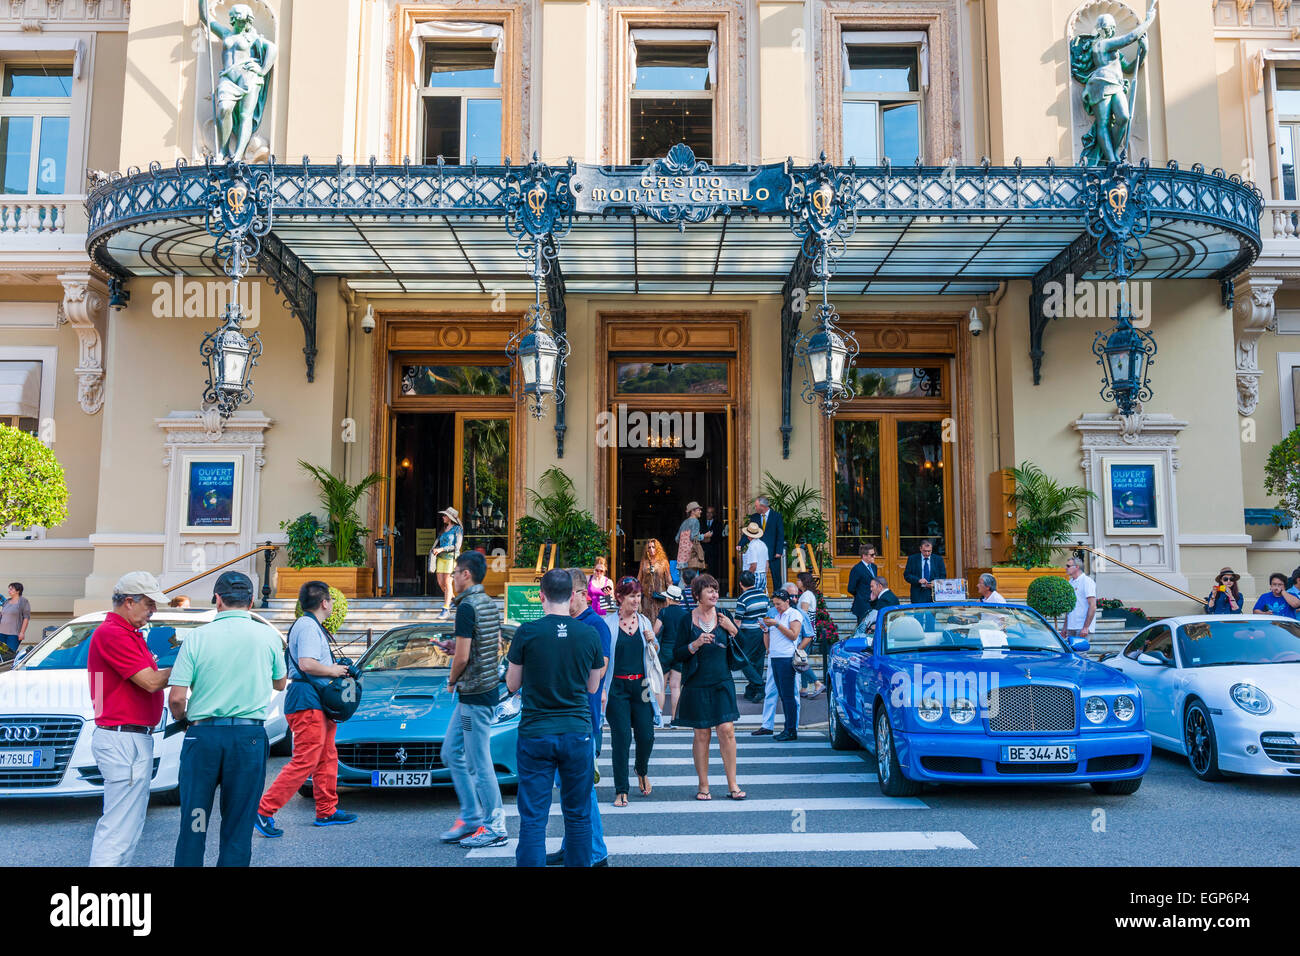 MONTE CARLO, Monaco - 3 ottobre 2014: Occupato ingresso al Casinò di Monte Carlo nel Principato di Monaco Foto Stock